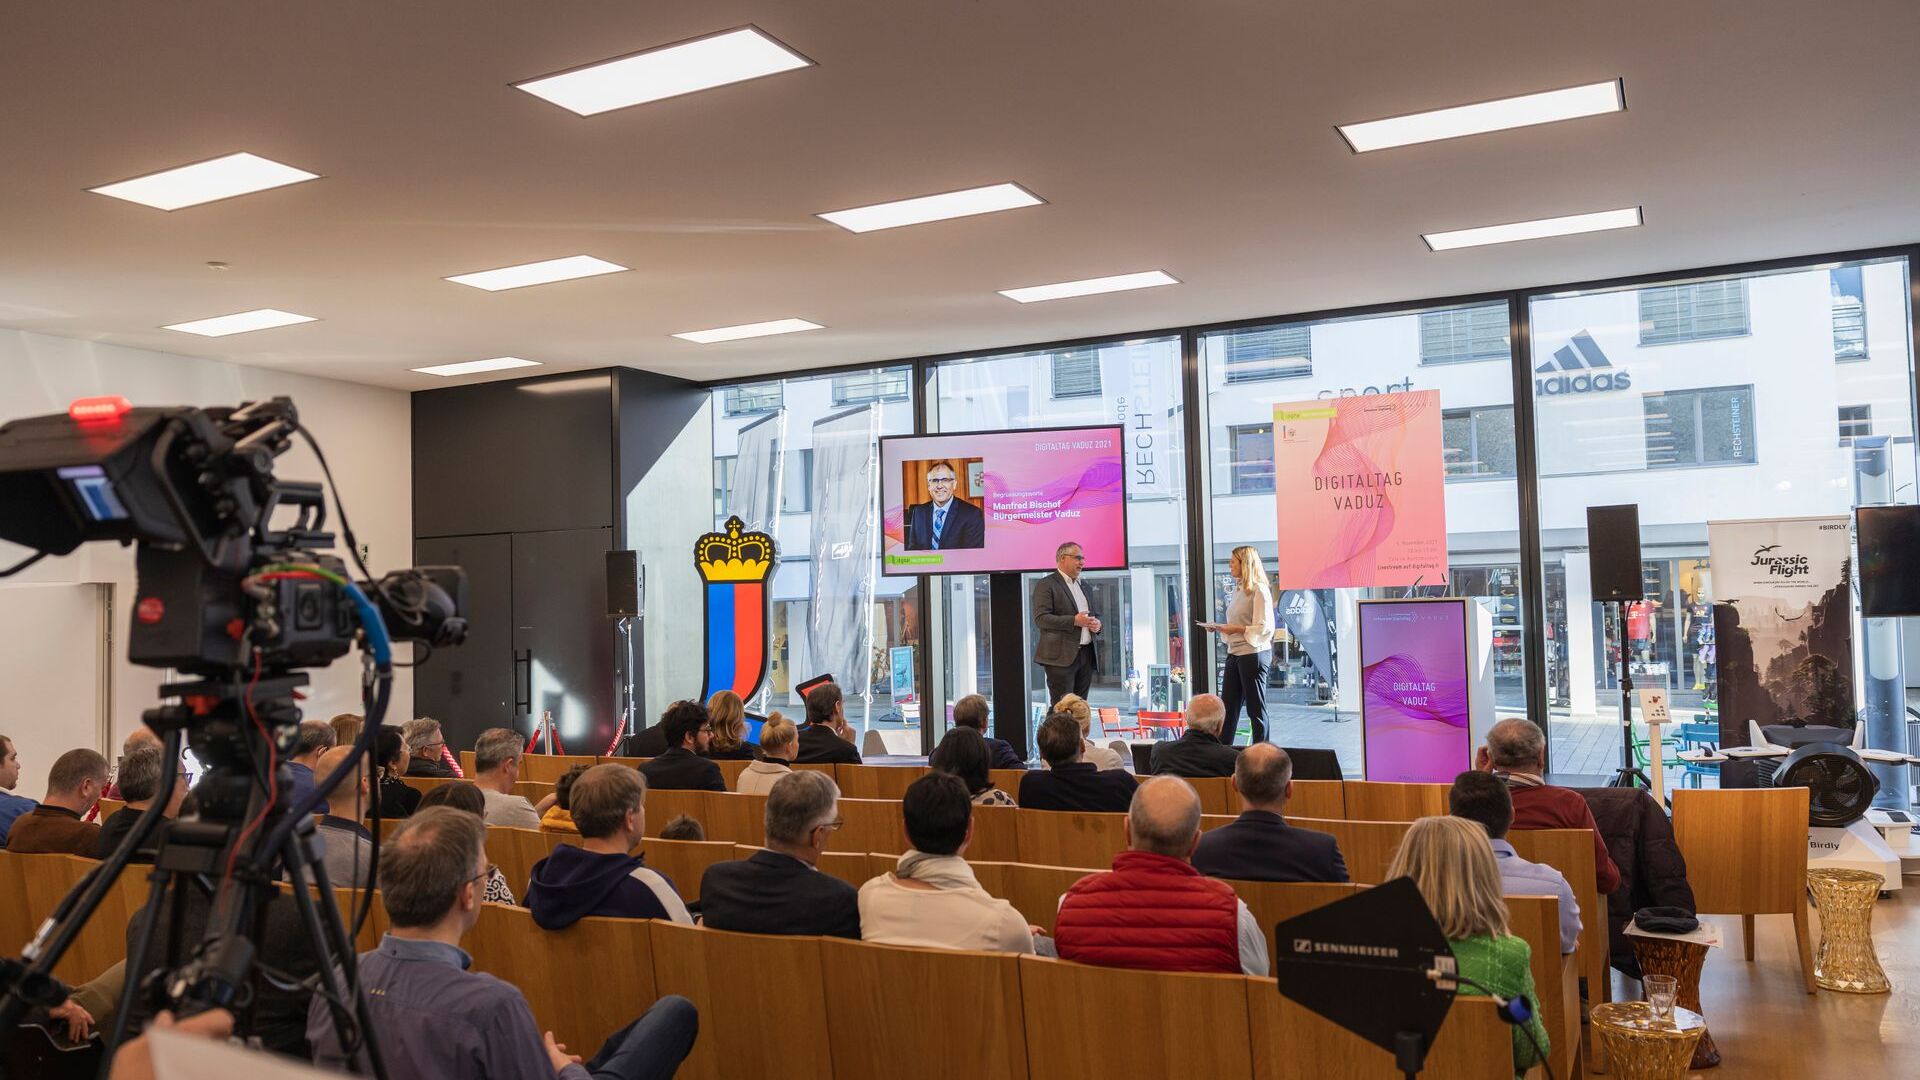 De "Digitaltag Vaduz", verwelkomd door het Kunstmuseum van de hoofdstad van het Vorstendom Liechtenstein op zaterdag 6 november 2021, wekte het enthousiasme van het publiek en de sprekers naar analogie van de "Swiss Digital Day" van de volgende dag 10: de tussenkomst van de burgemeester van de hoofdstad Manfred Bischof